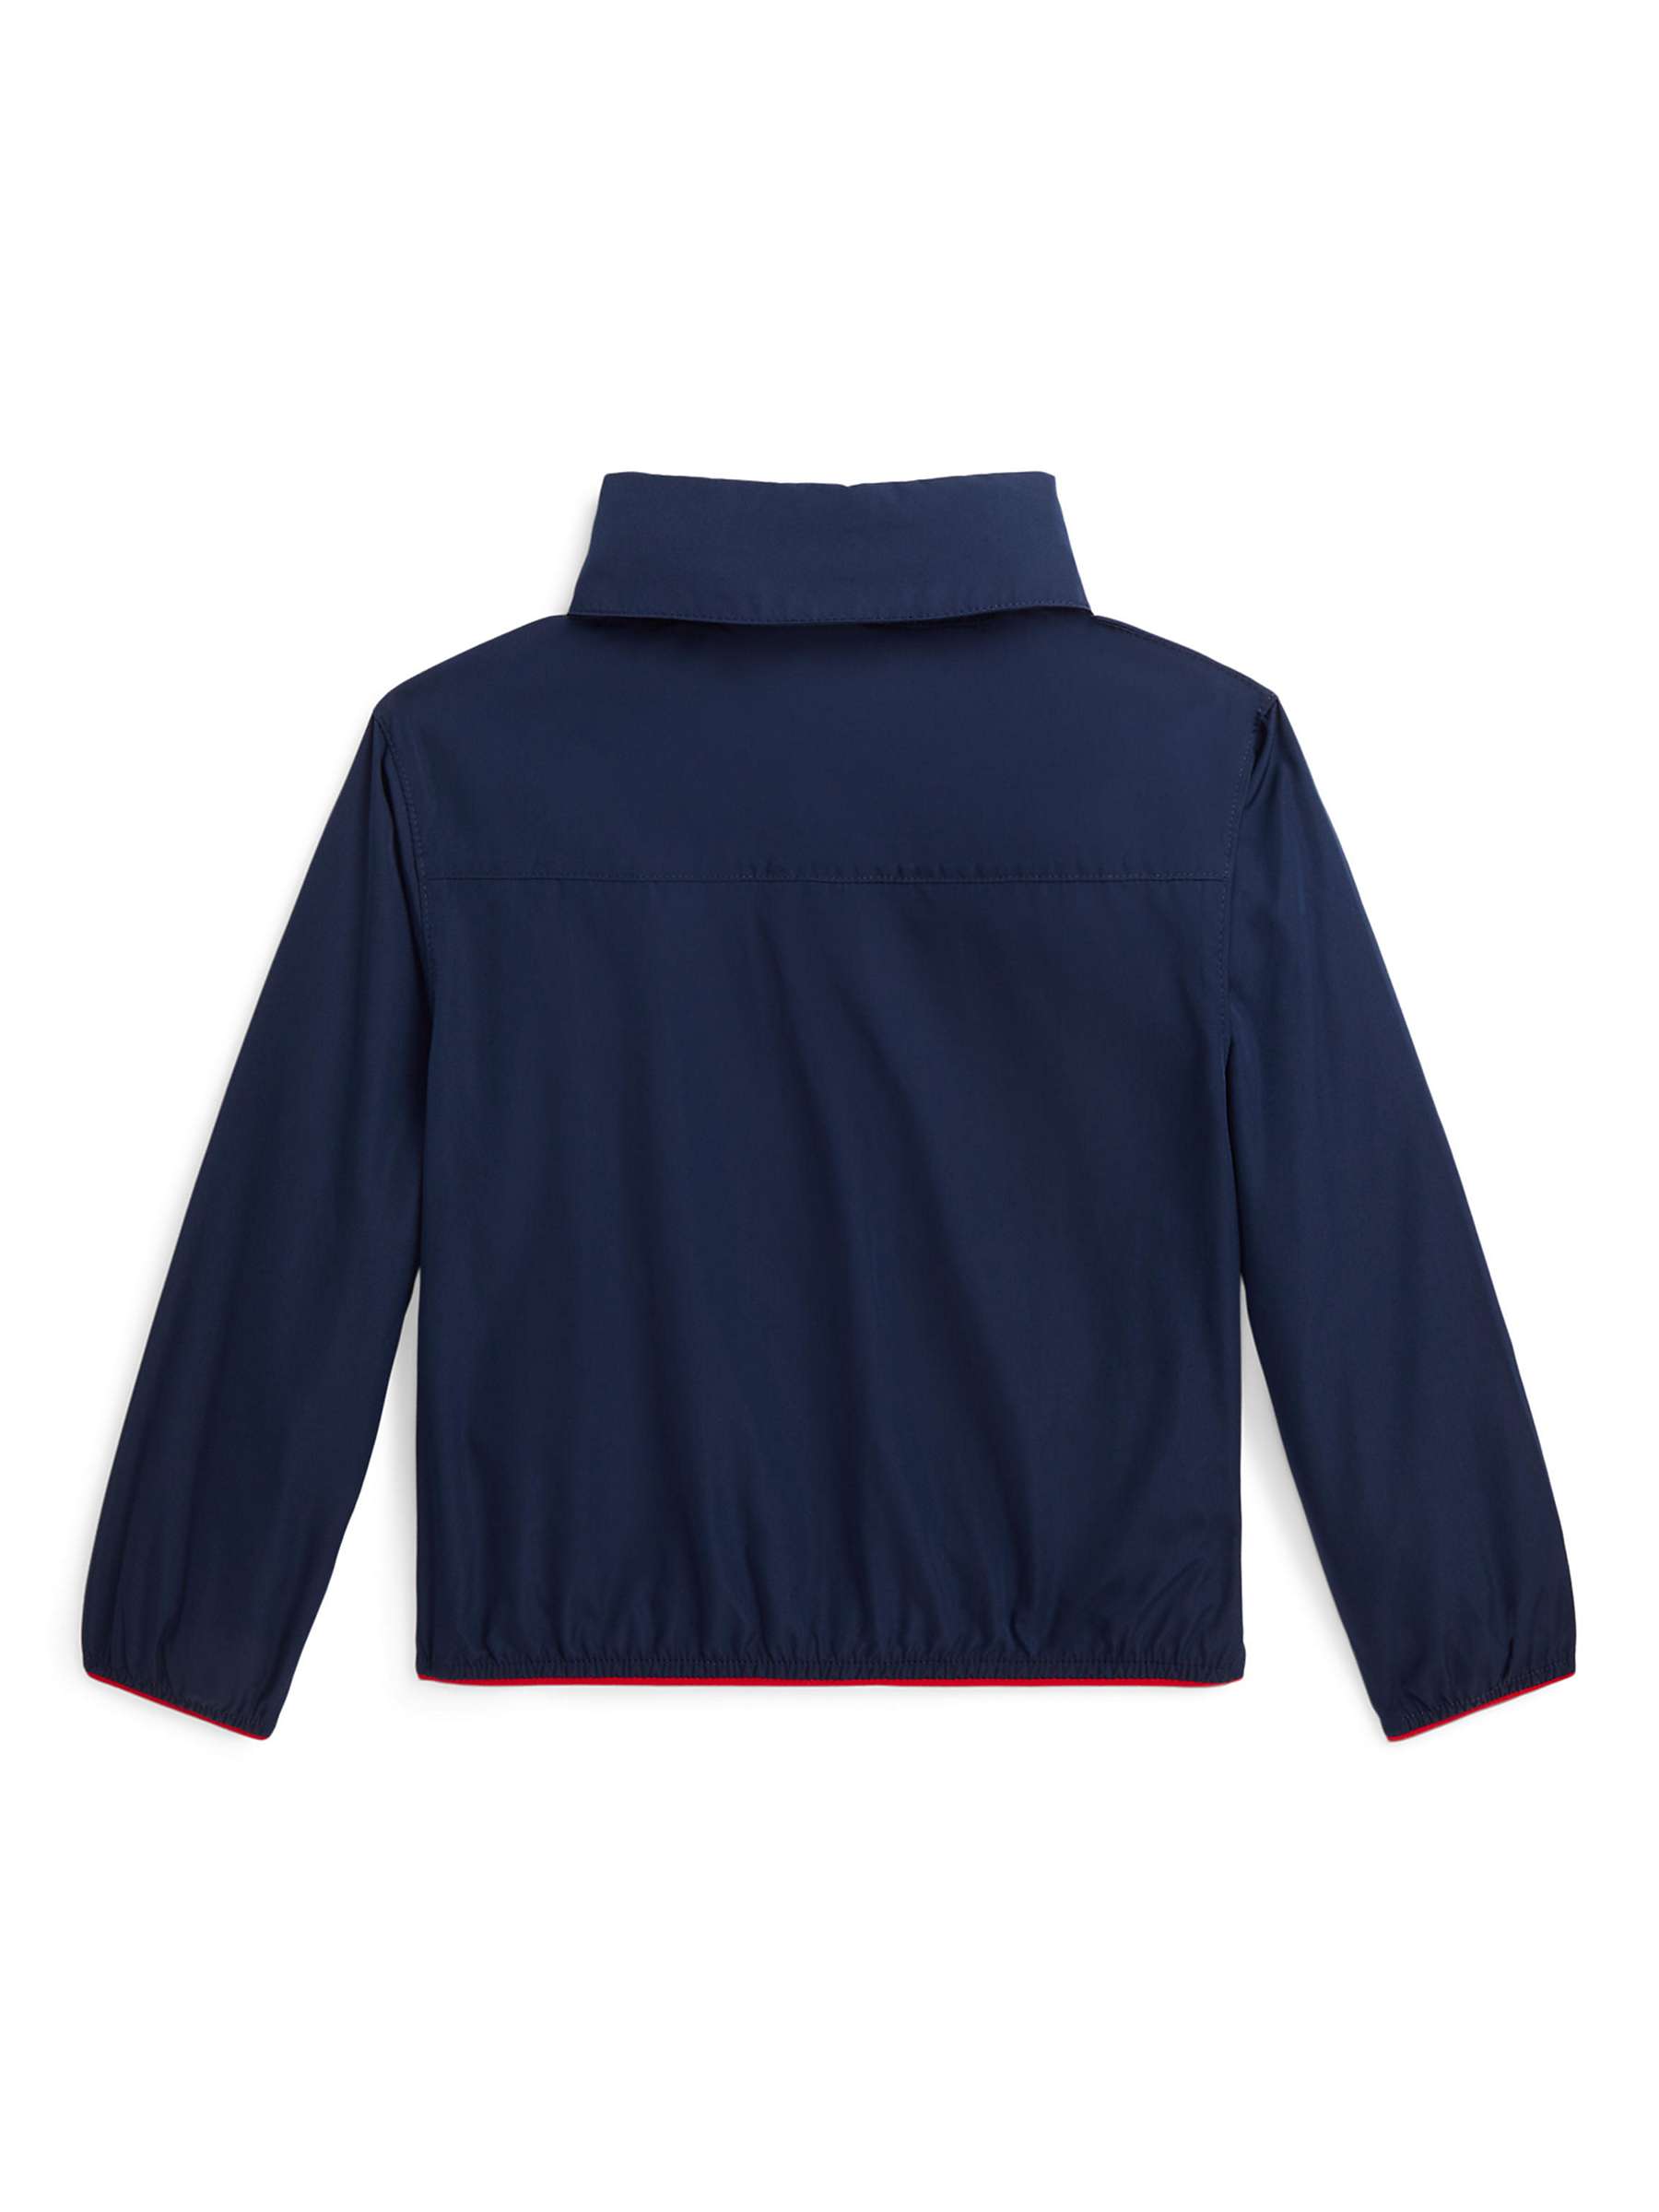 Buy Ralph Lauren Kids' Cooper Packable Water Repellant Hooded Jacket, Newport Navy Online at johnlewis.com